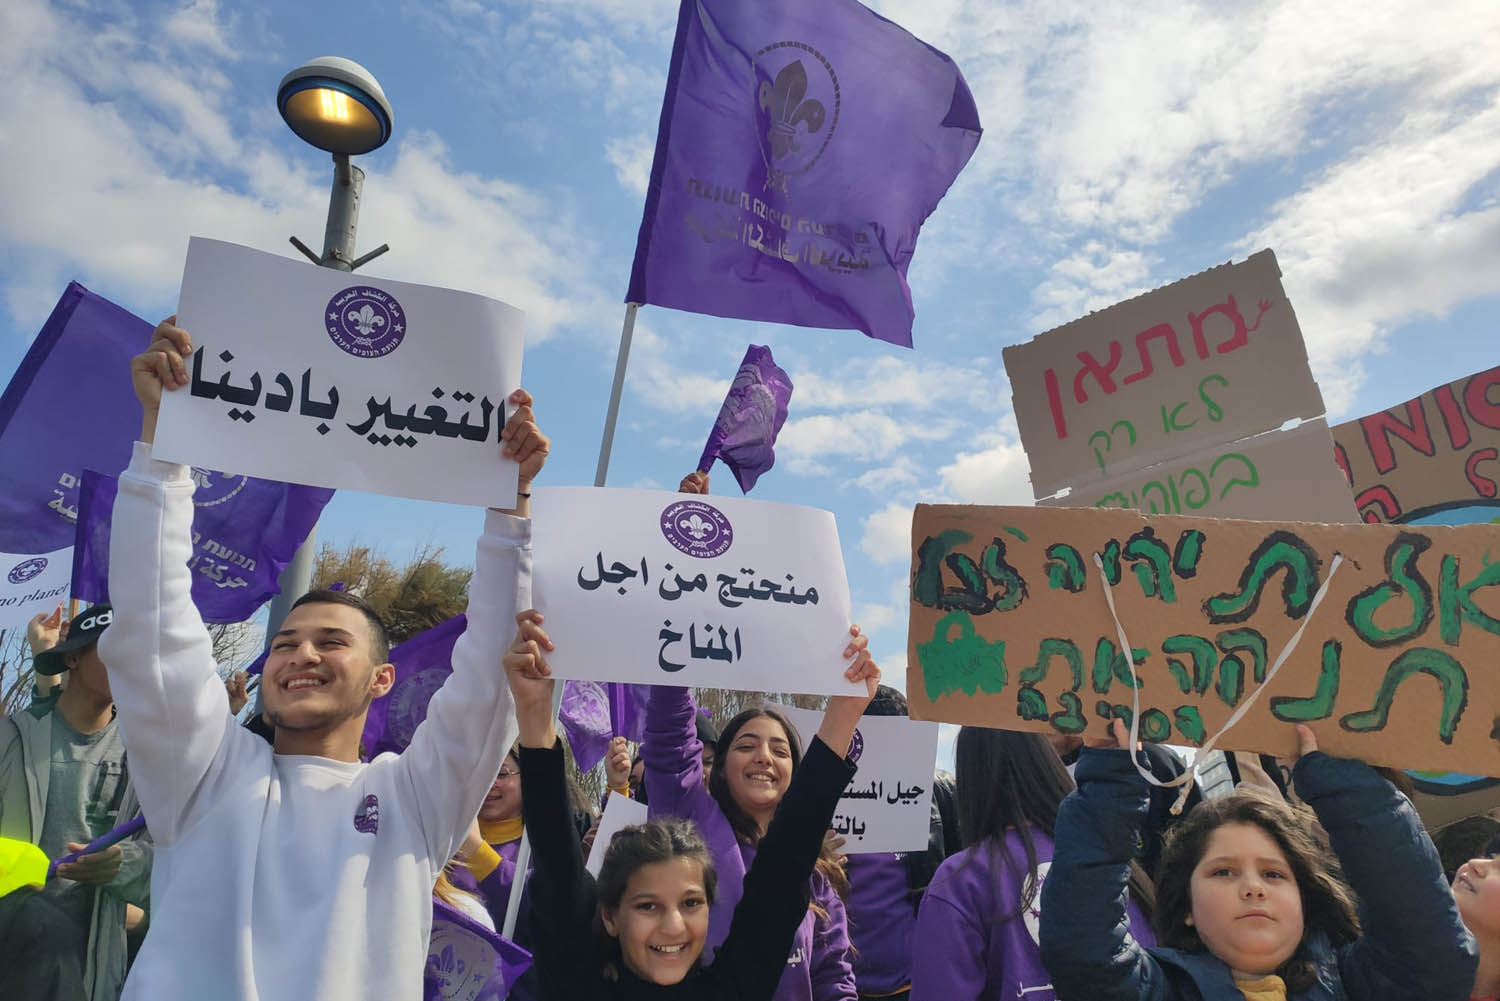 הפגנת בני נוער בתל אביב בדרישה לחוקק חוק אקלים. &quot;לא ננוח עד שתחוקקו חוק גדול ומקיף&quot; (צילום: נוער למען האקלים)